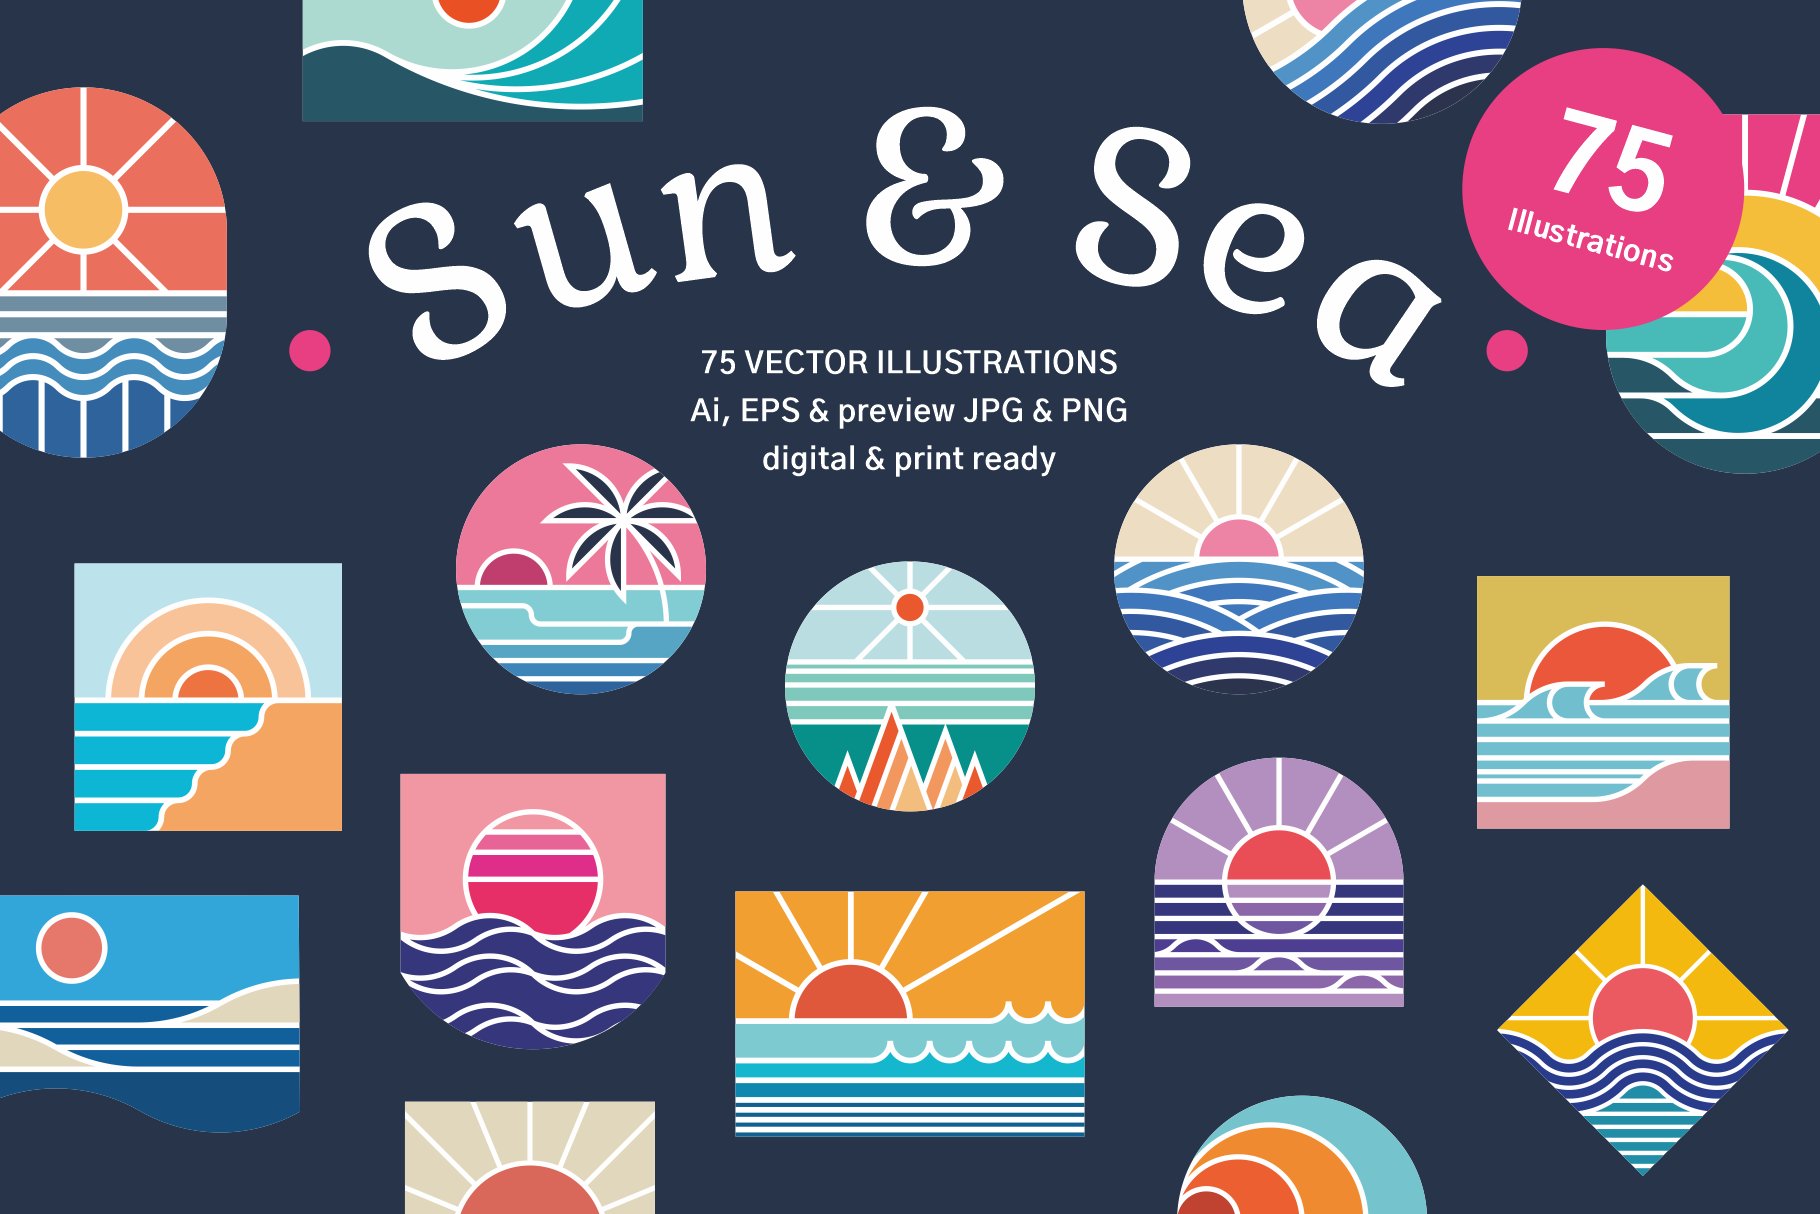 Sun & Sea, 75 Illustrations cover image.